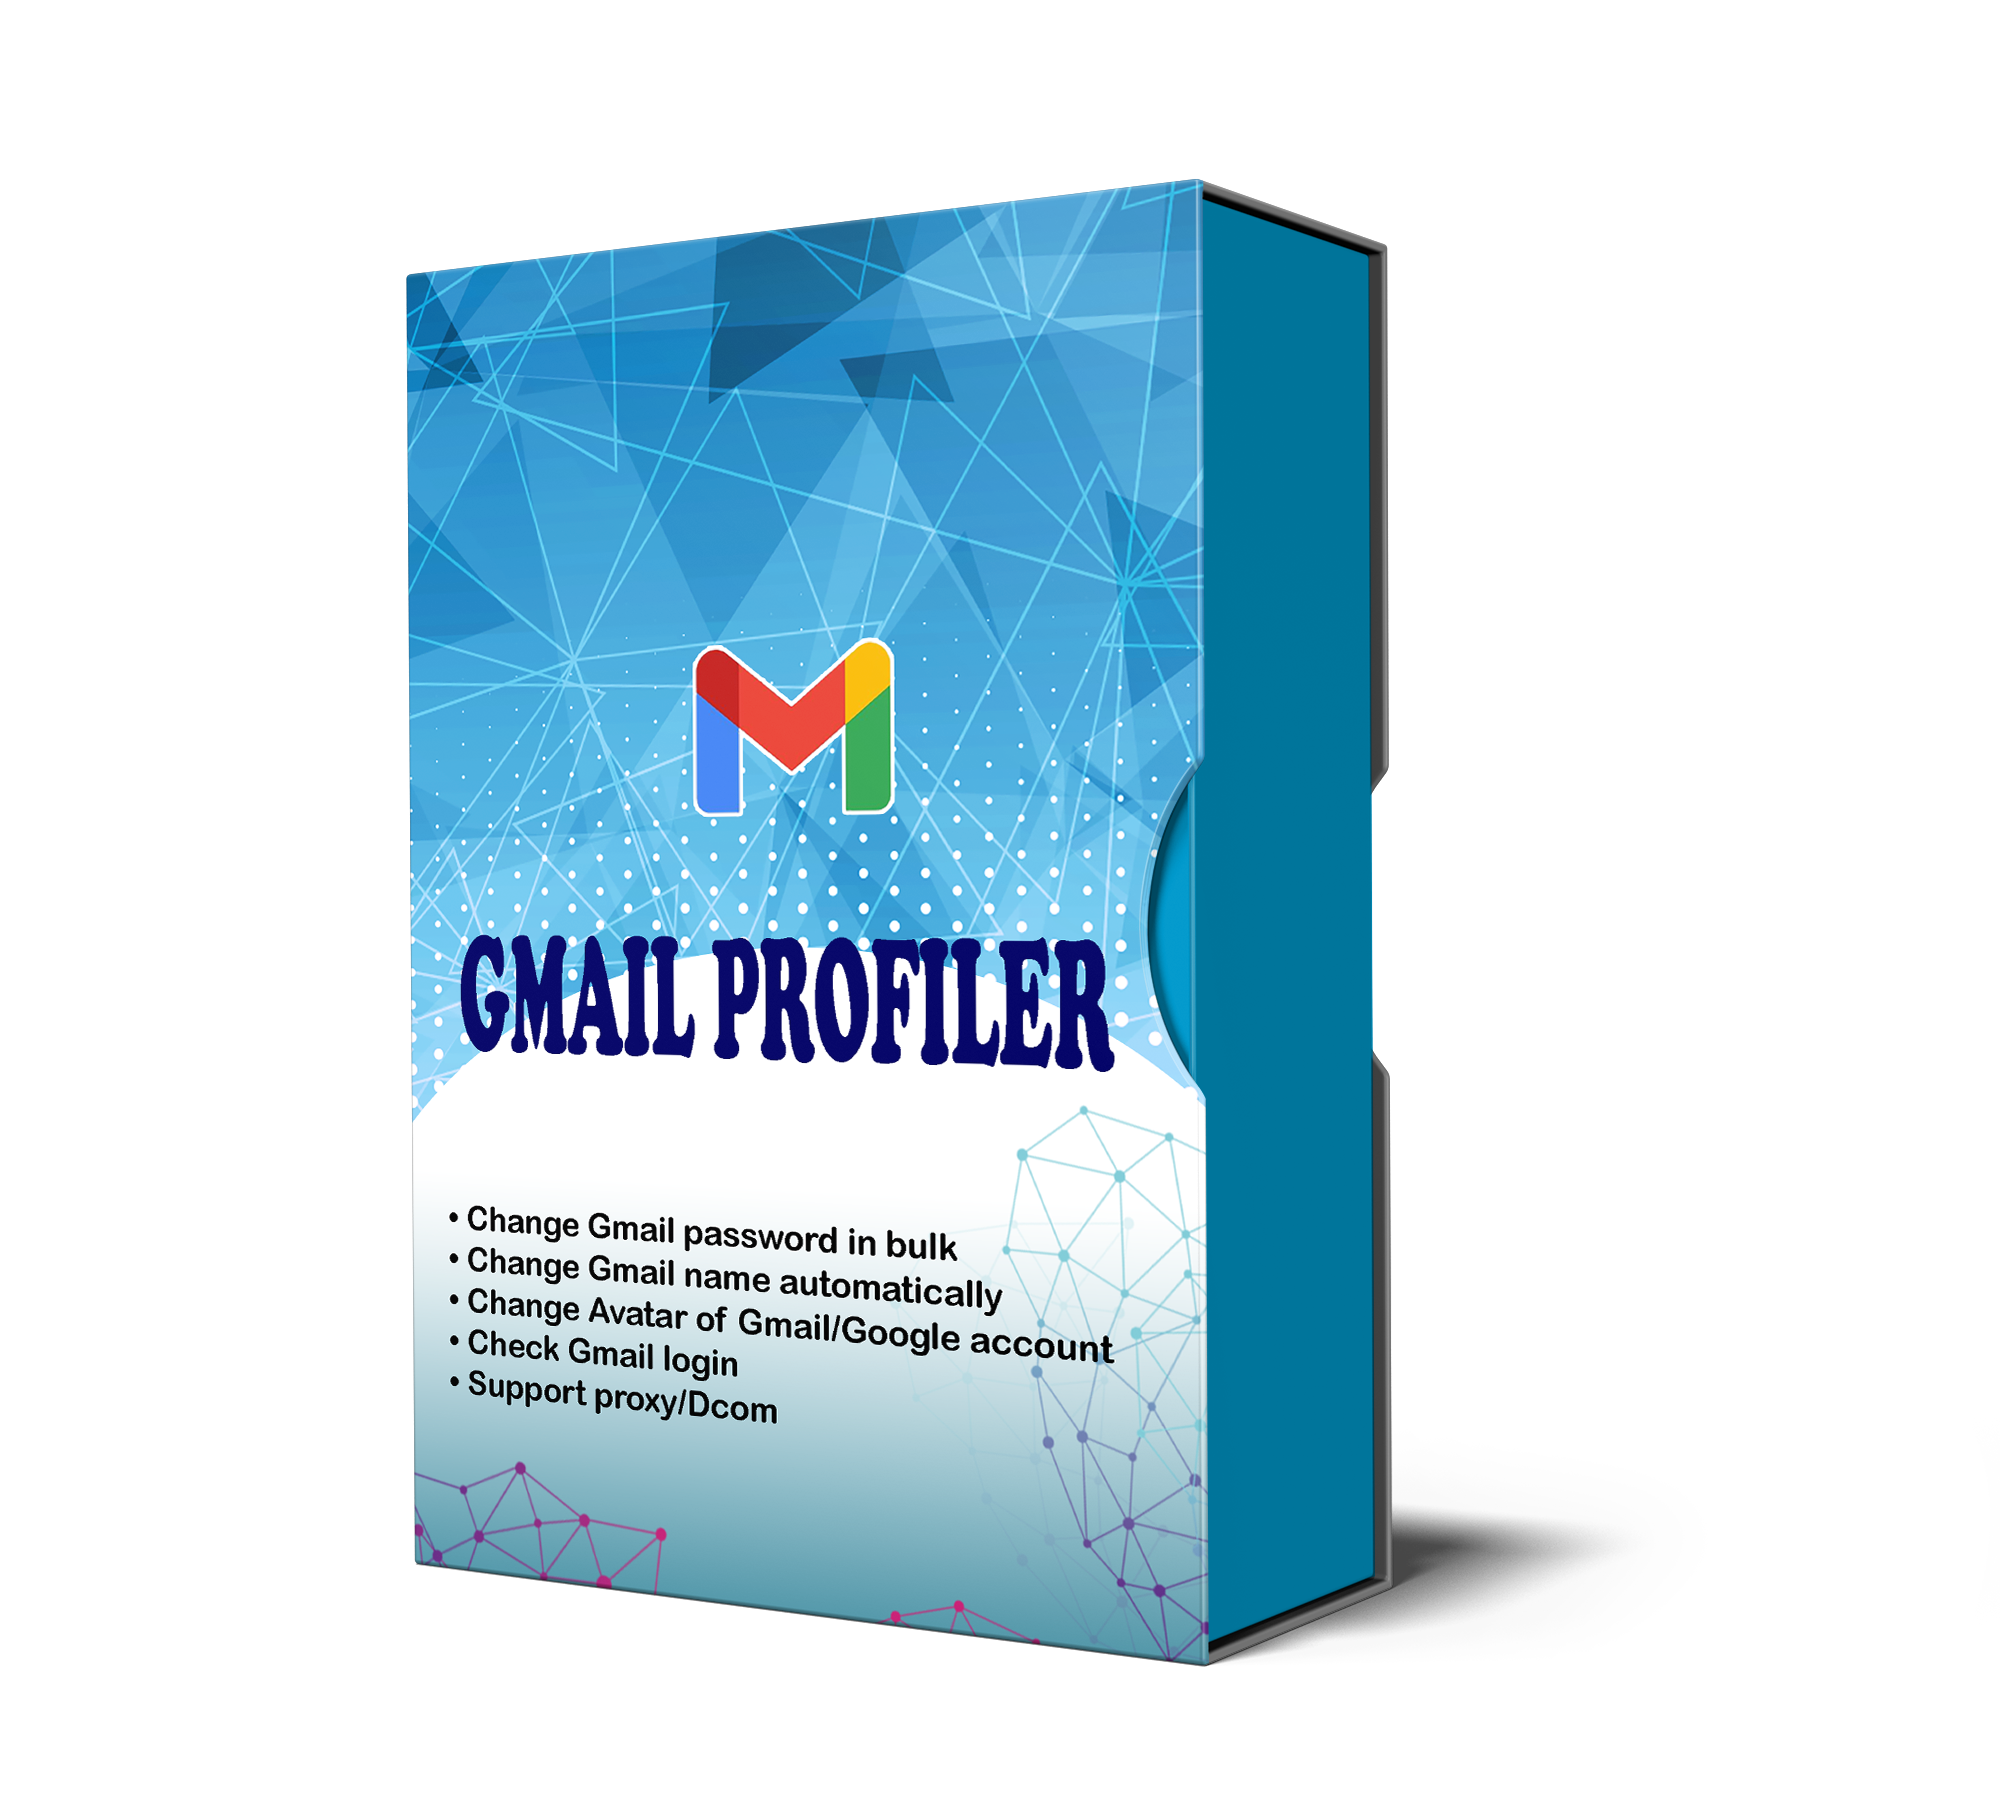 GmailProfiler